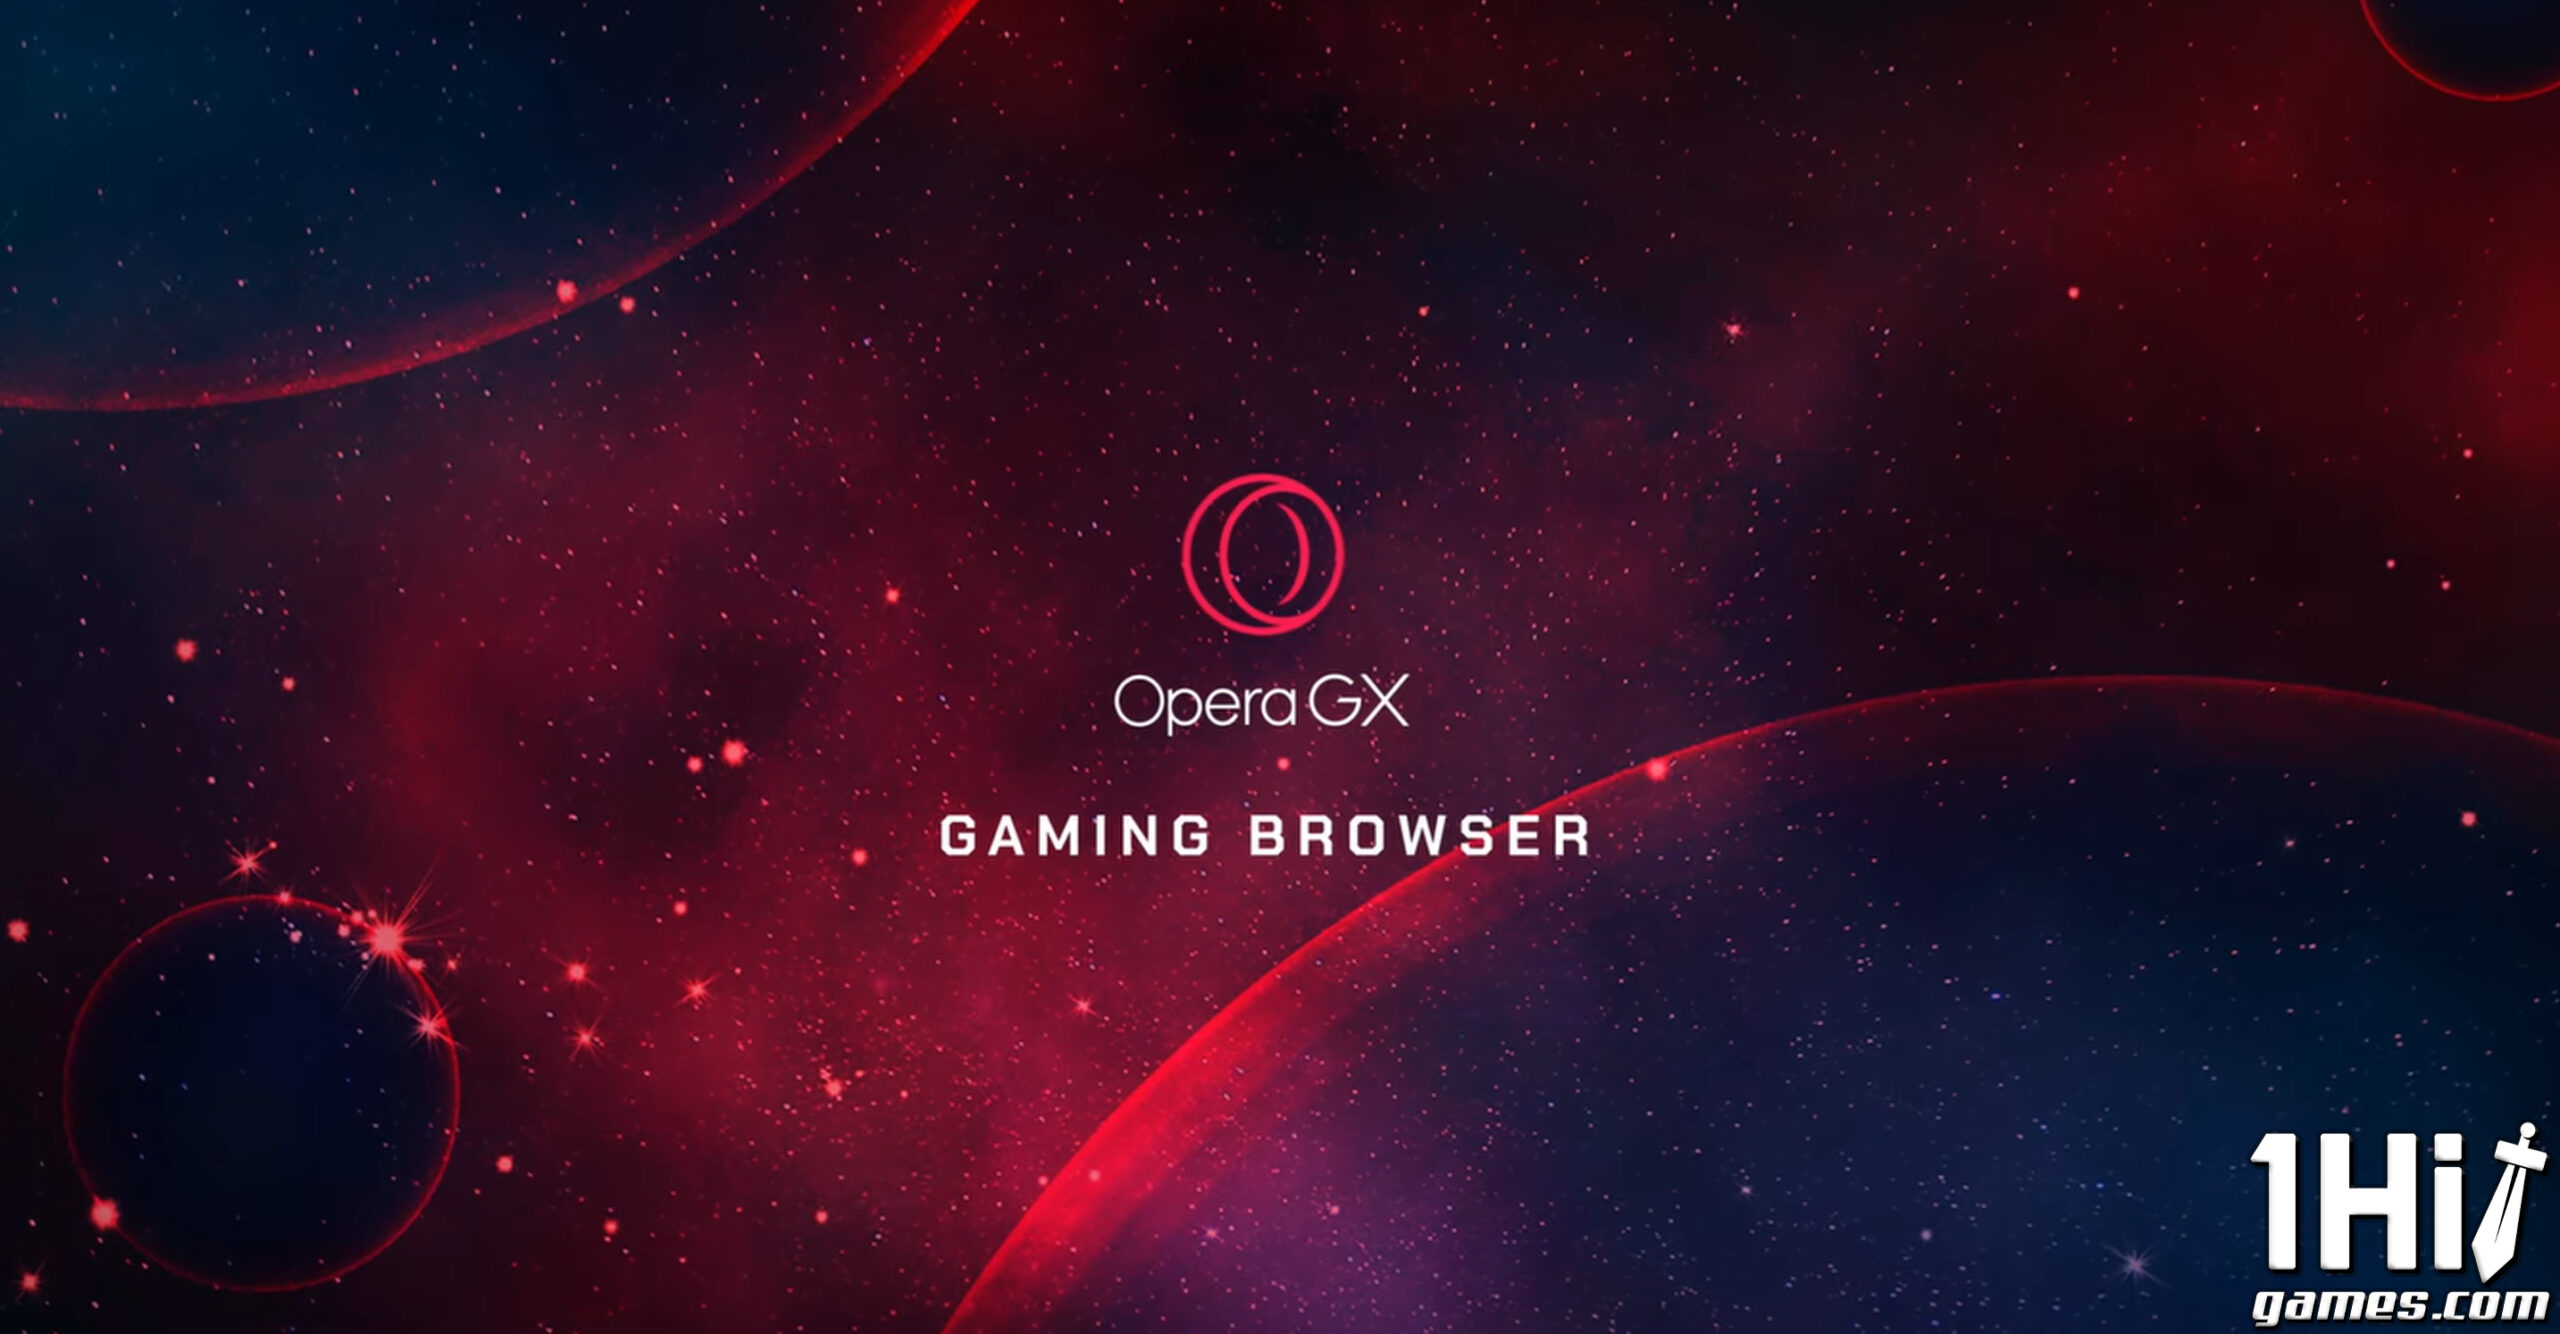 Navegador gamer para celulares é lançado pela Opera